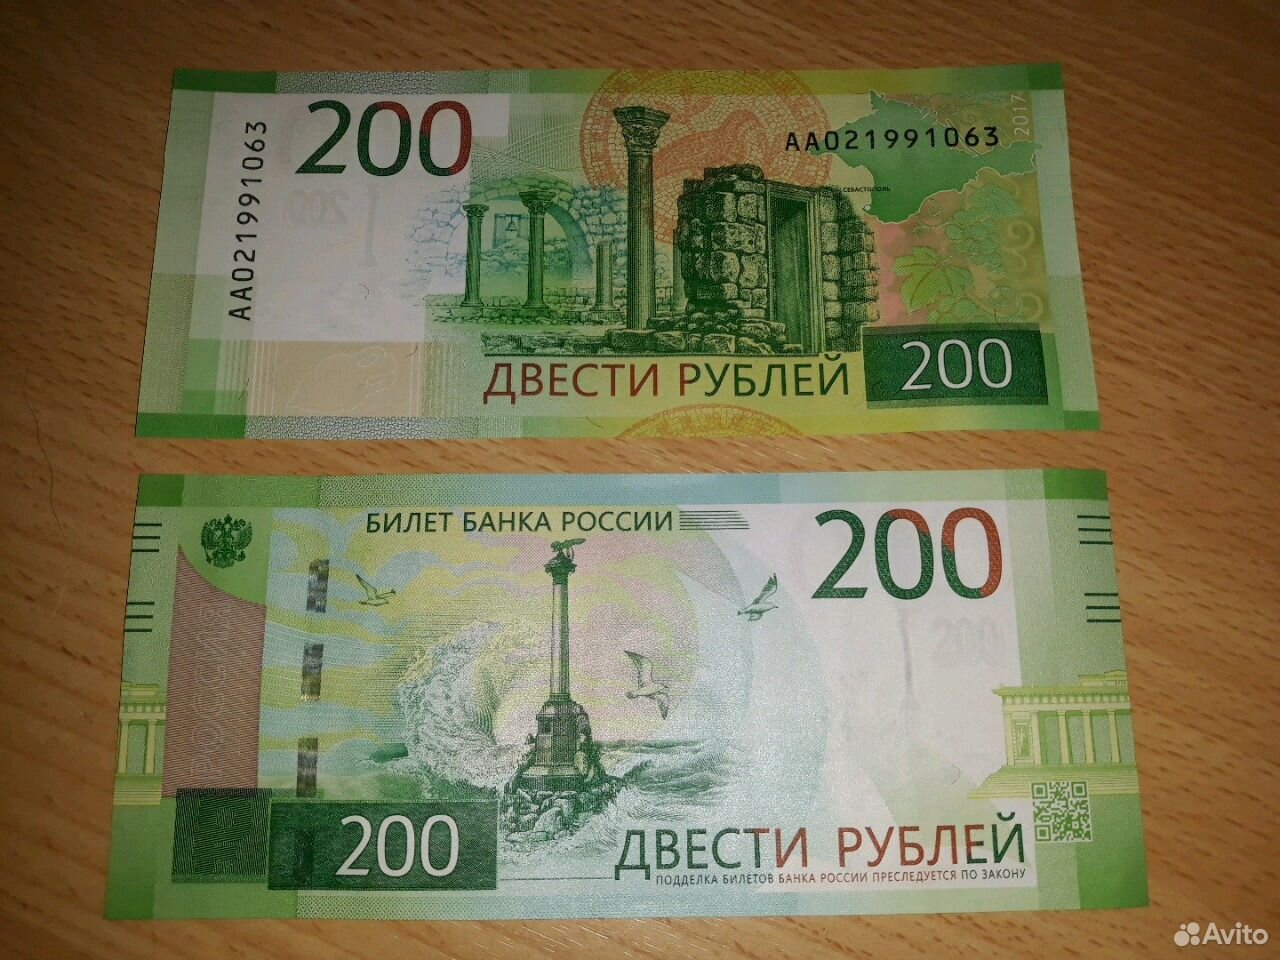 200 рублей плюс 200 рублей. Купюра 200. Купюра 200 рублей. 200 Рублей банкнота. Пластиковые 200 рублей.